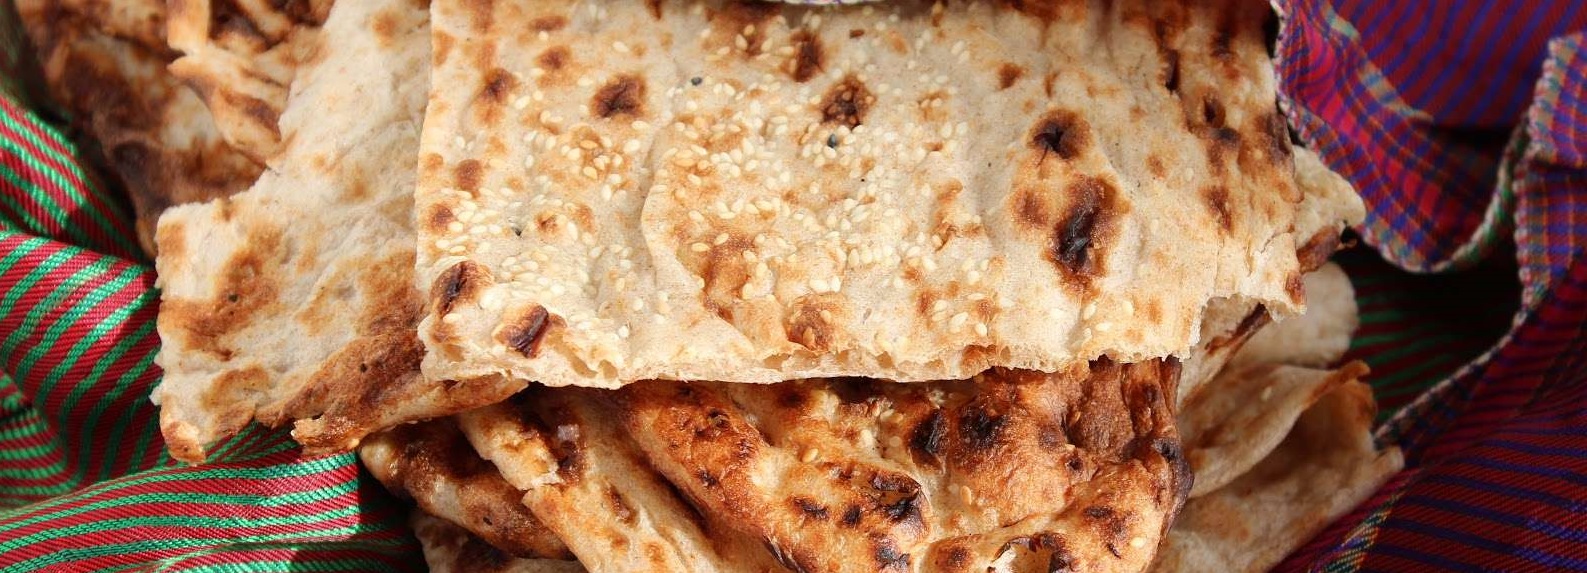 آغاز جلسات افزایش قیمت نان در وزارت صنعت/افزایش آرد سنگک از ۶۰۰ به ۹۰۰تومان